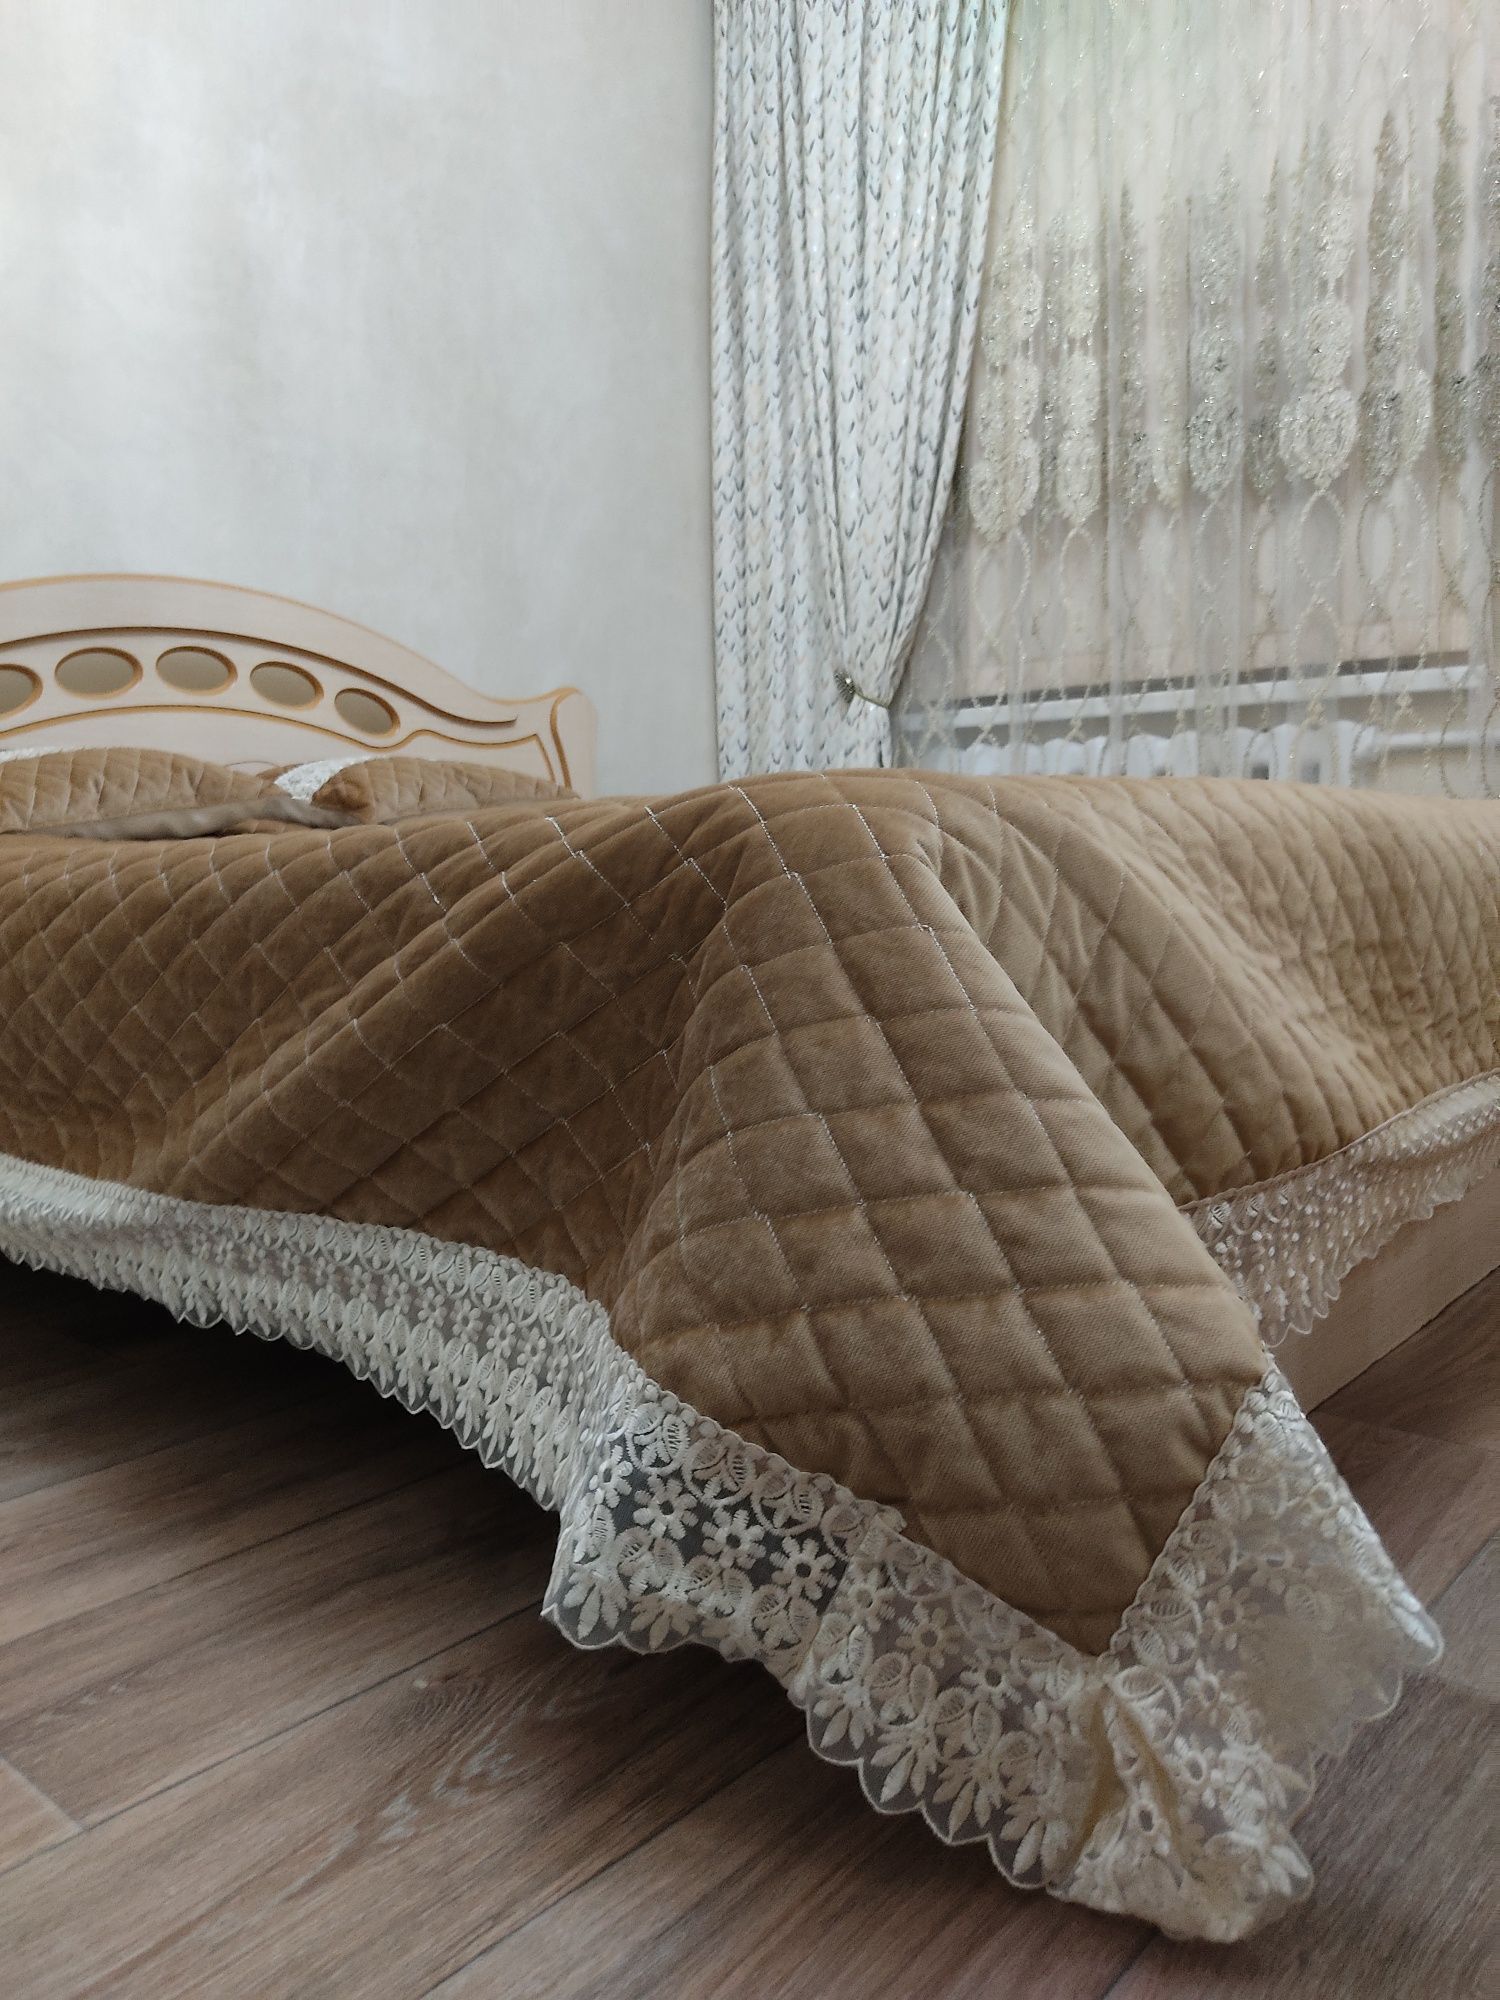 Кровать двуспальная с деревянной спинкой. Белорусская мебель.